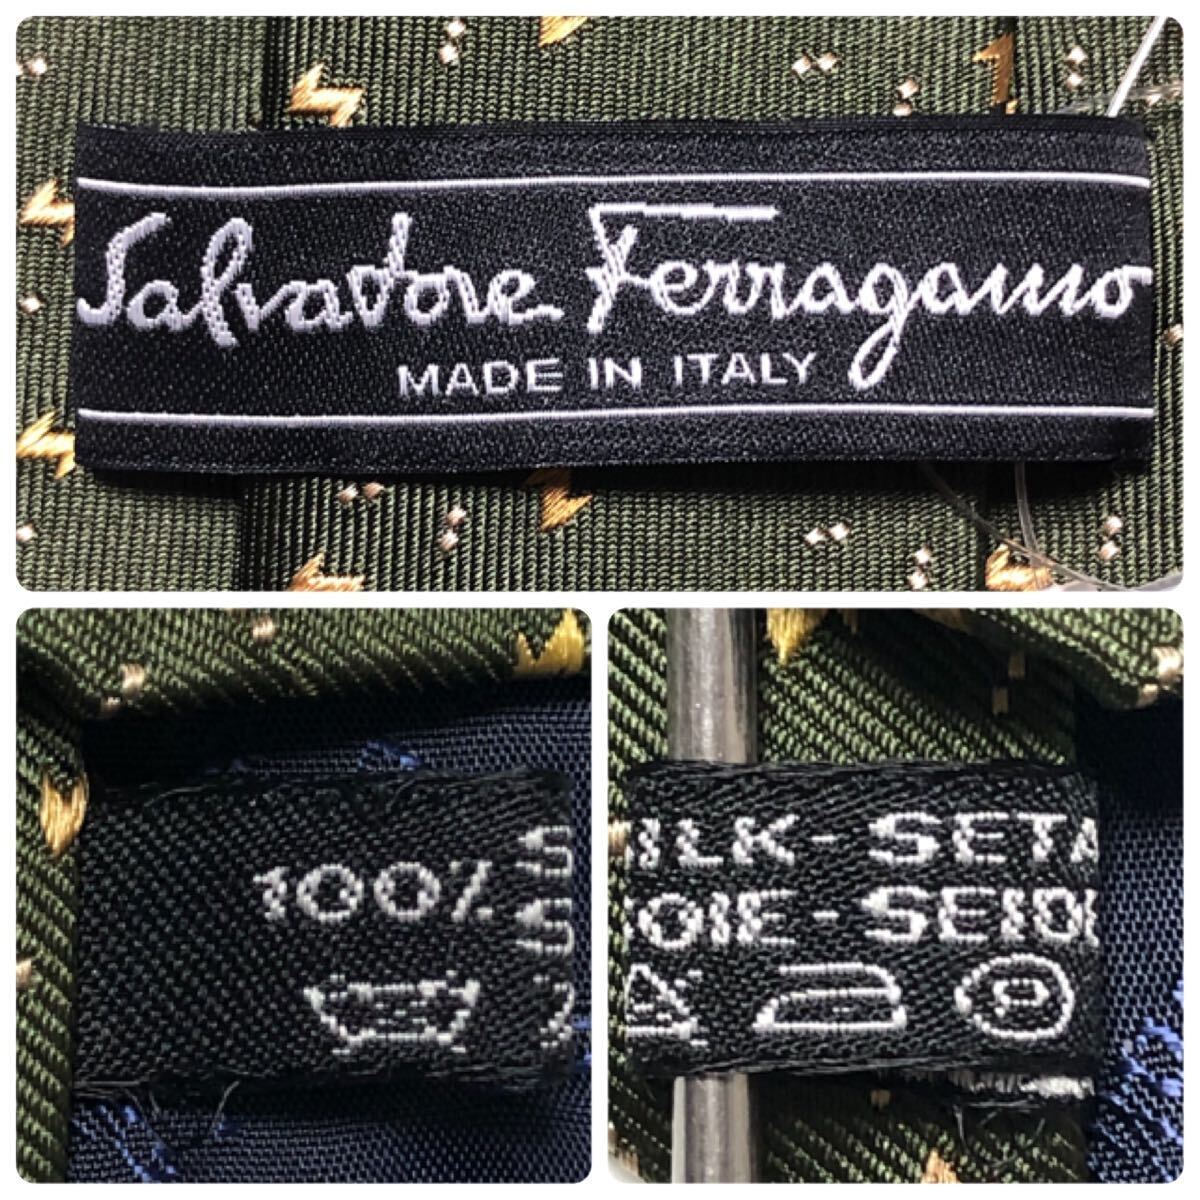 # новый товар не использовался с биркой # обычная цена 1.68 десять тысяч иен #Salvatore Ferragamo Salvatore Ferragamo галстук общий рисунок шелк 100% Италия производства зеленый 